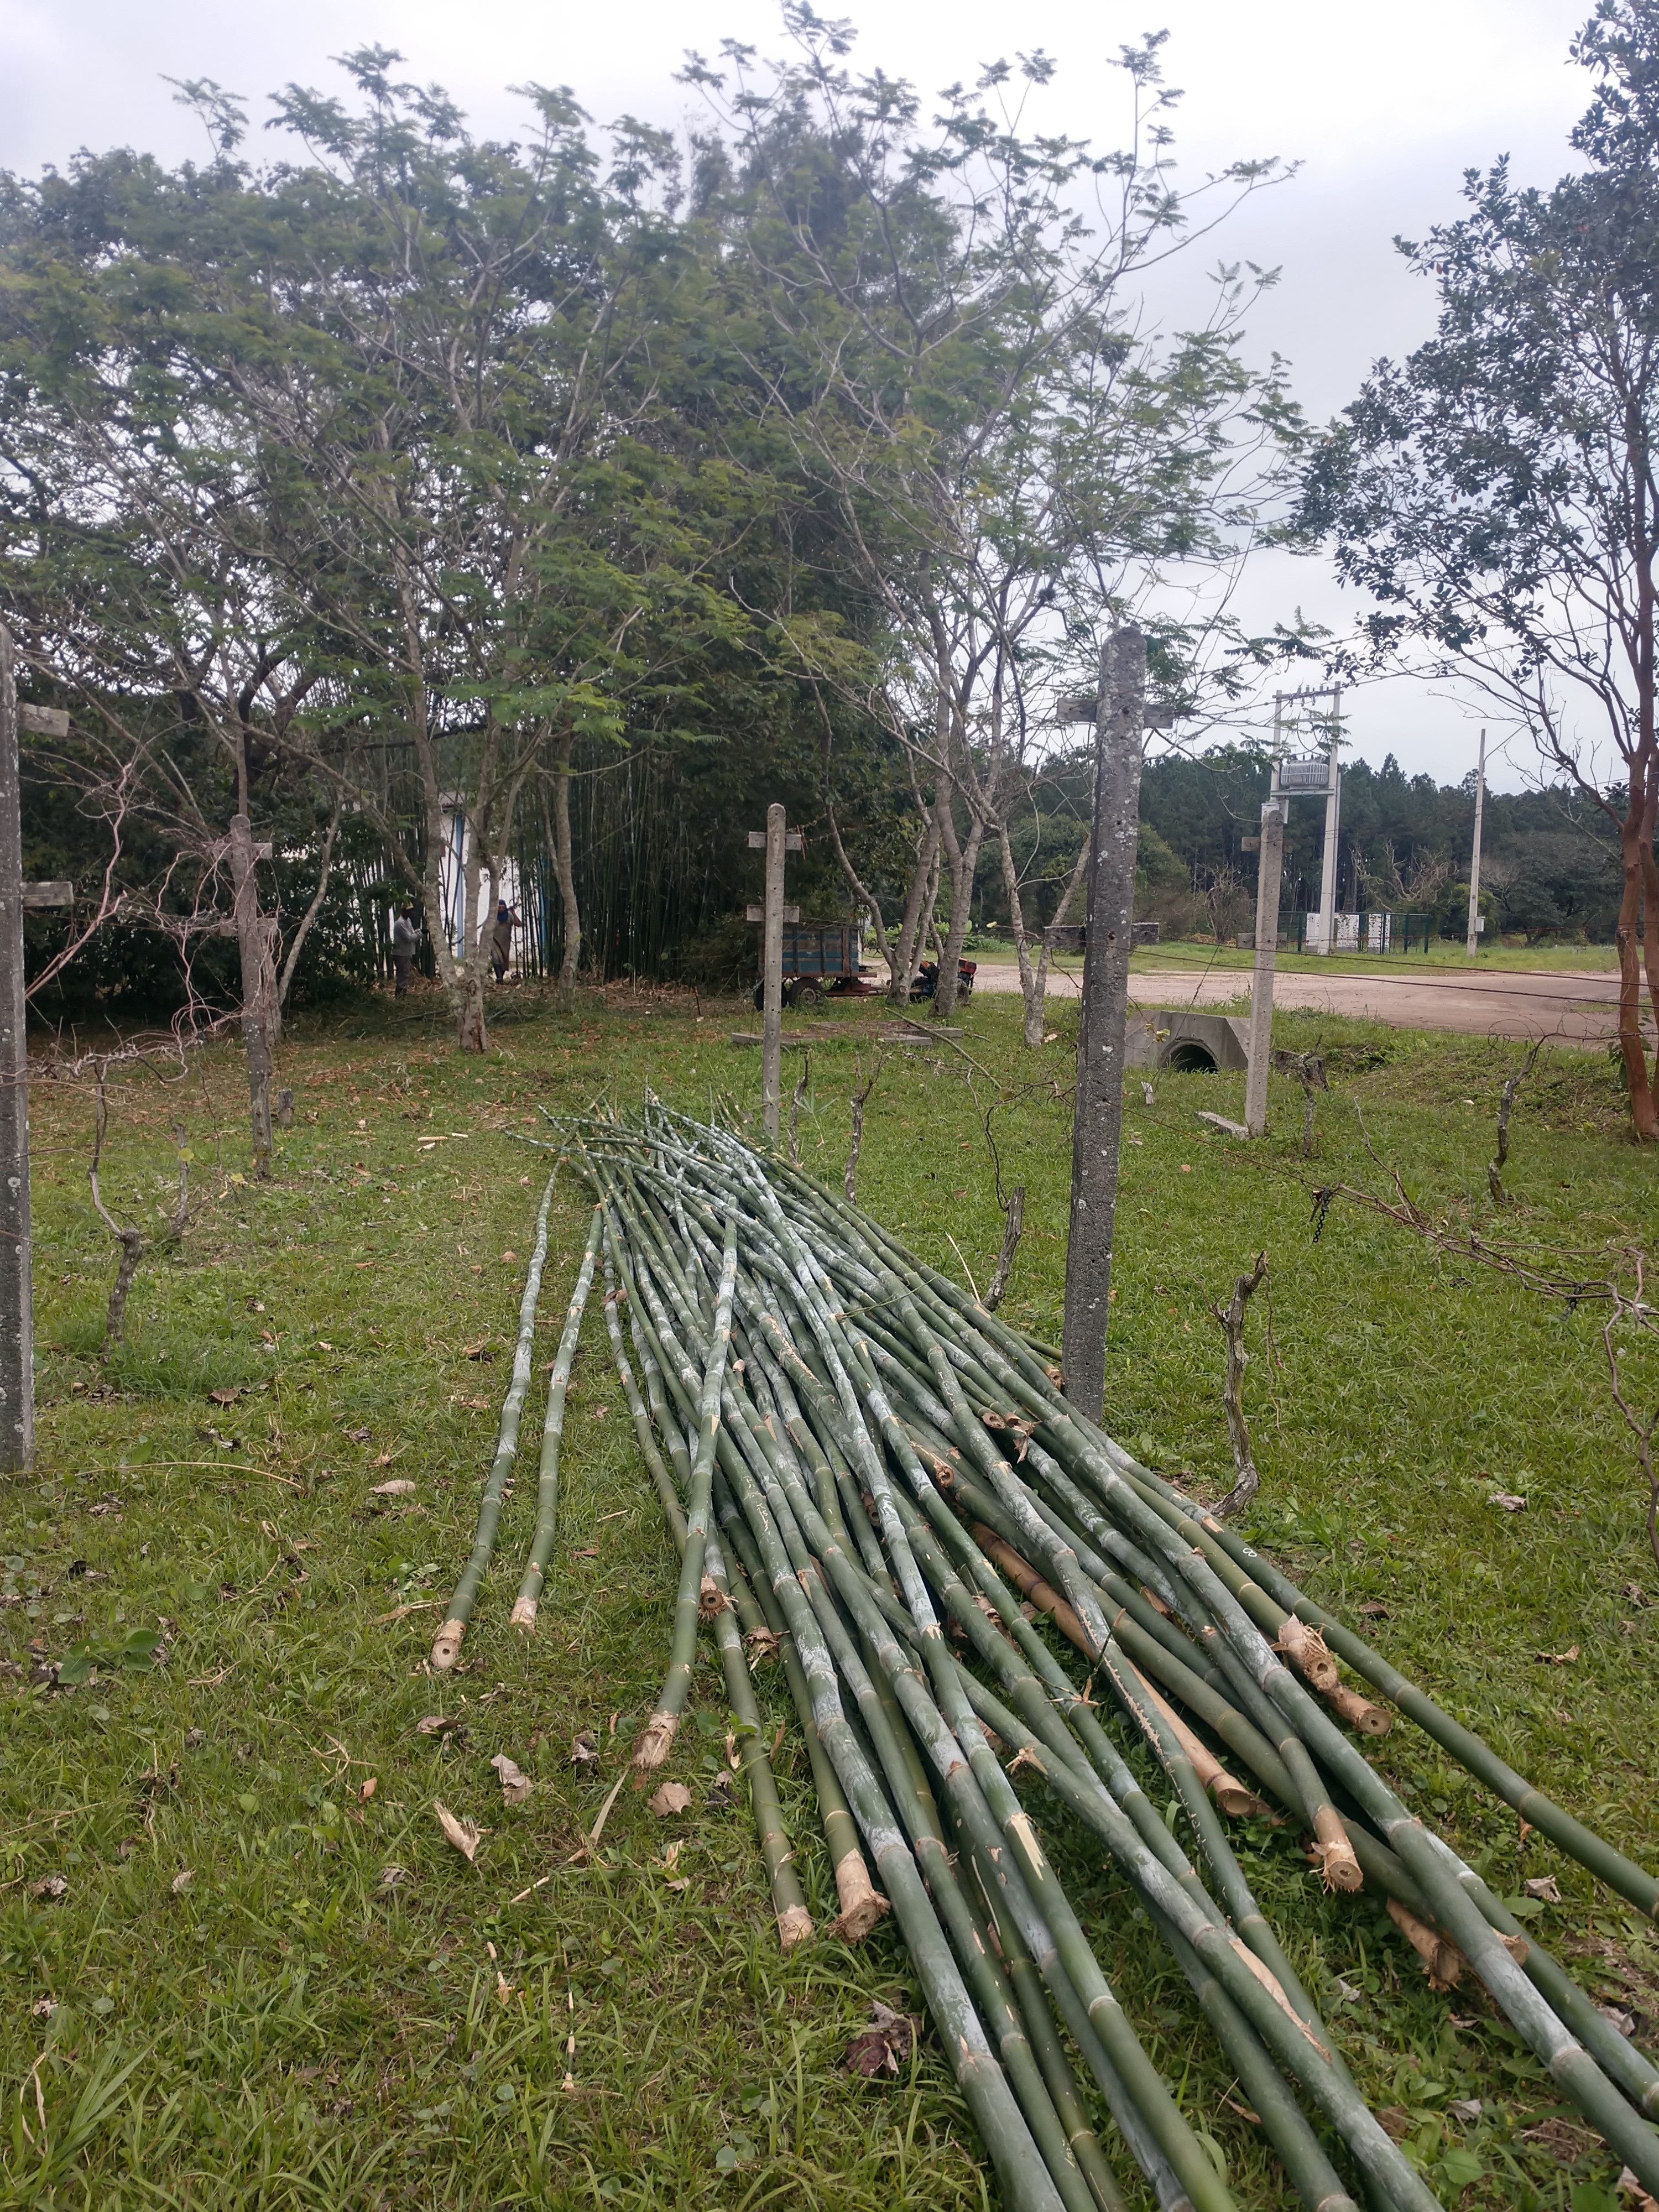 20190725 Fazenda Bambusa tuldoides após cortados para construção nova adm (1)